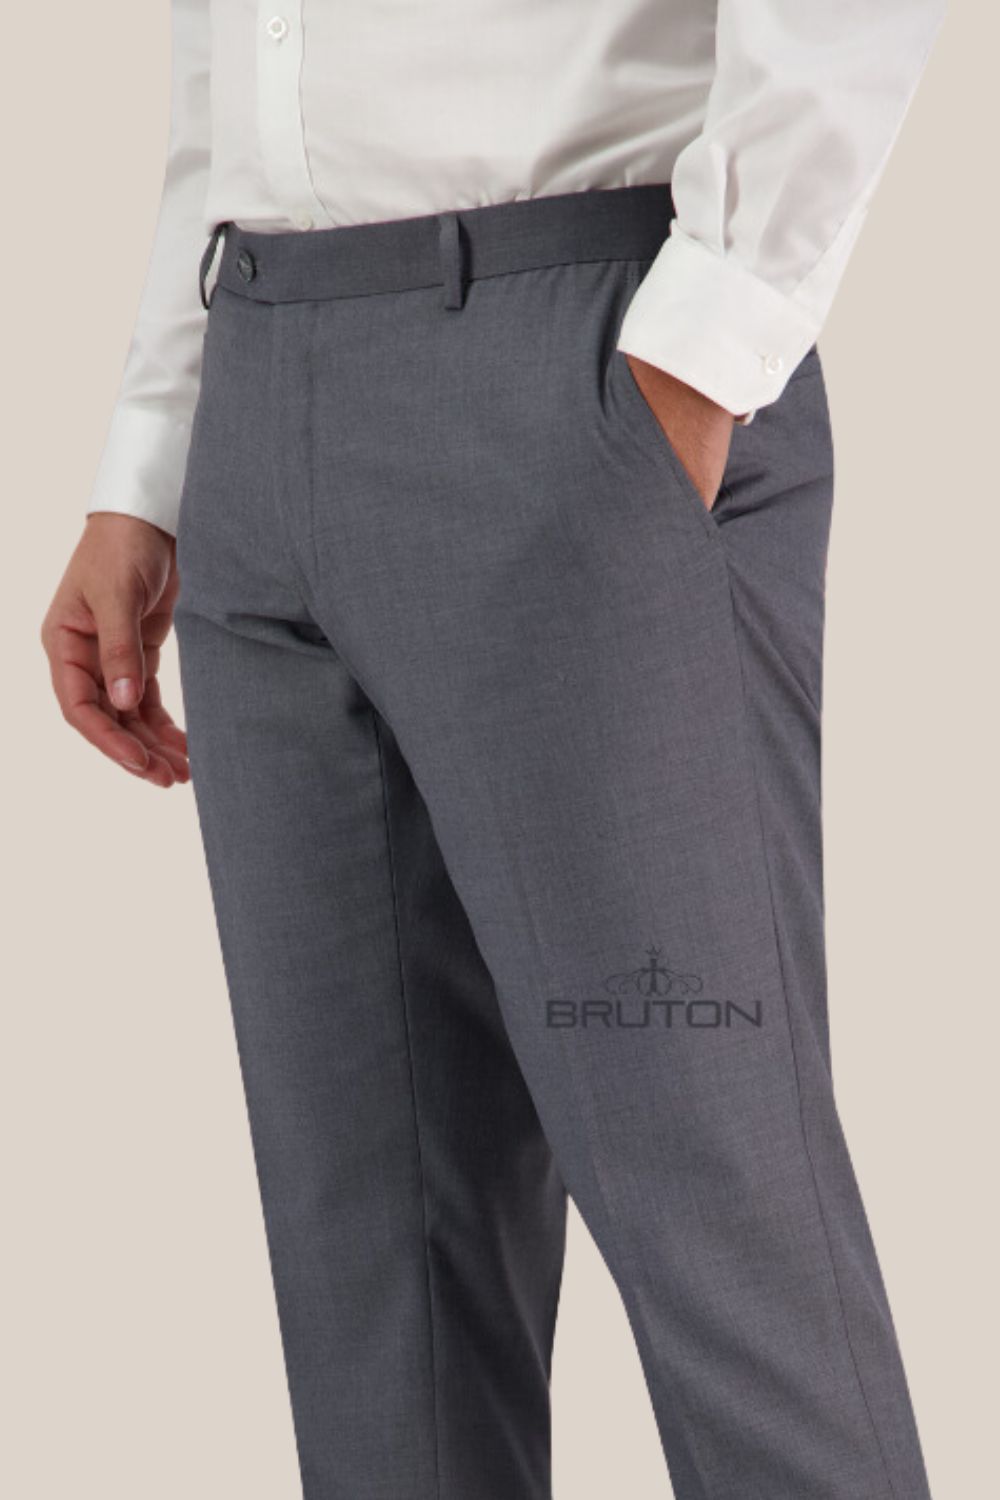 Bruton Jesse Keystone Suit Pants - SSB3